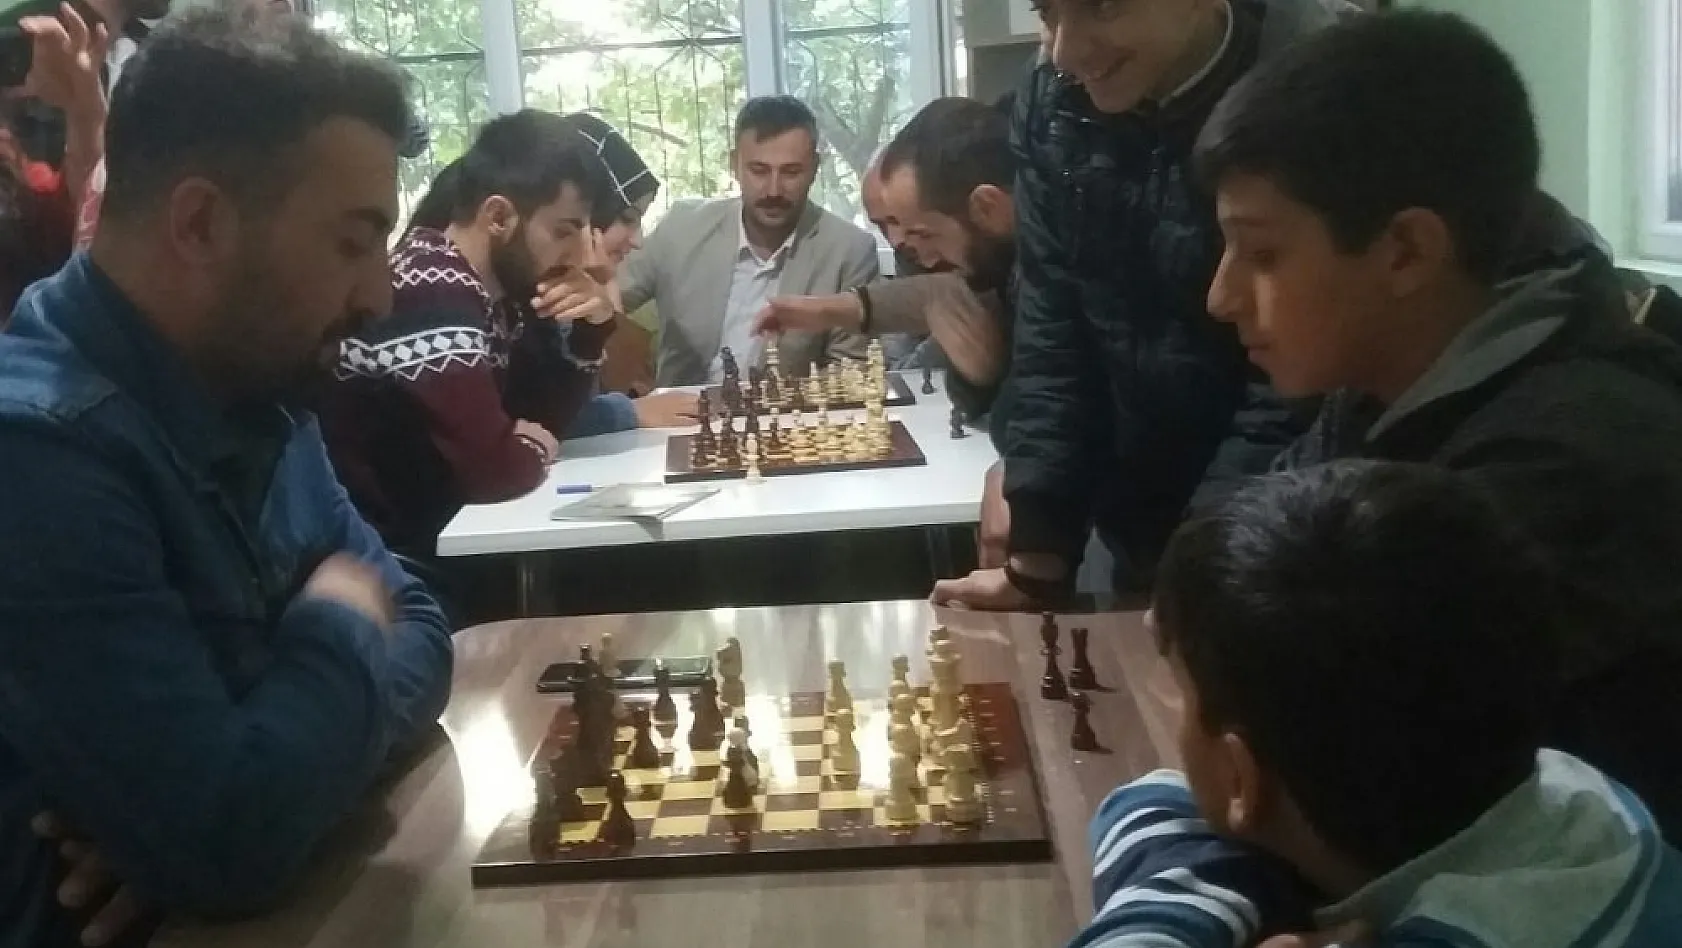 İşitme engelliler, satranç oynadı 